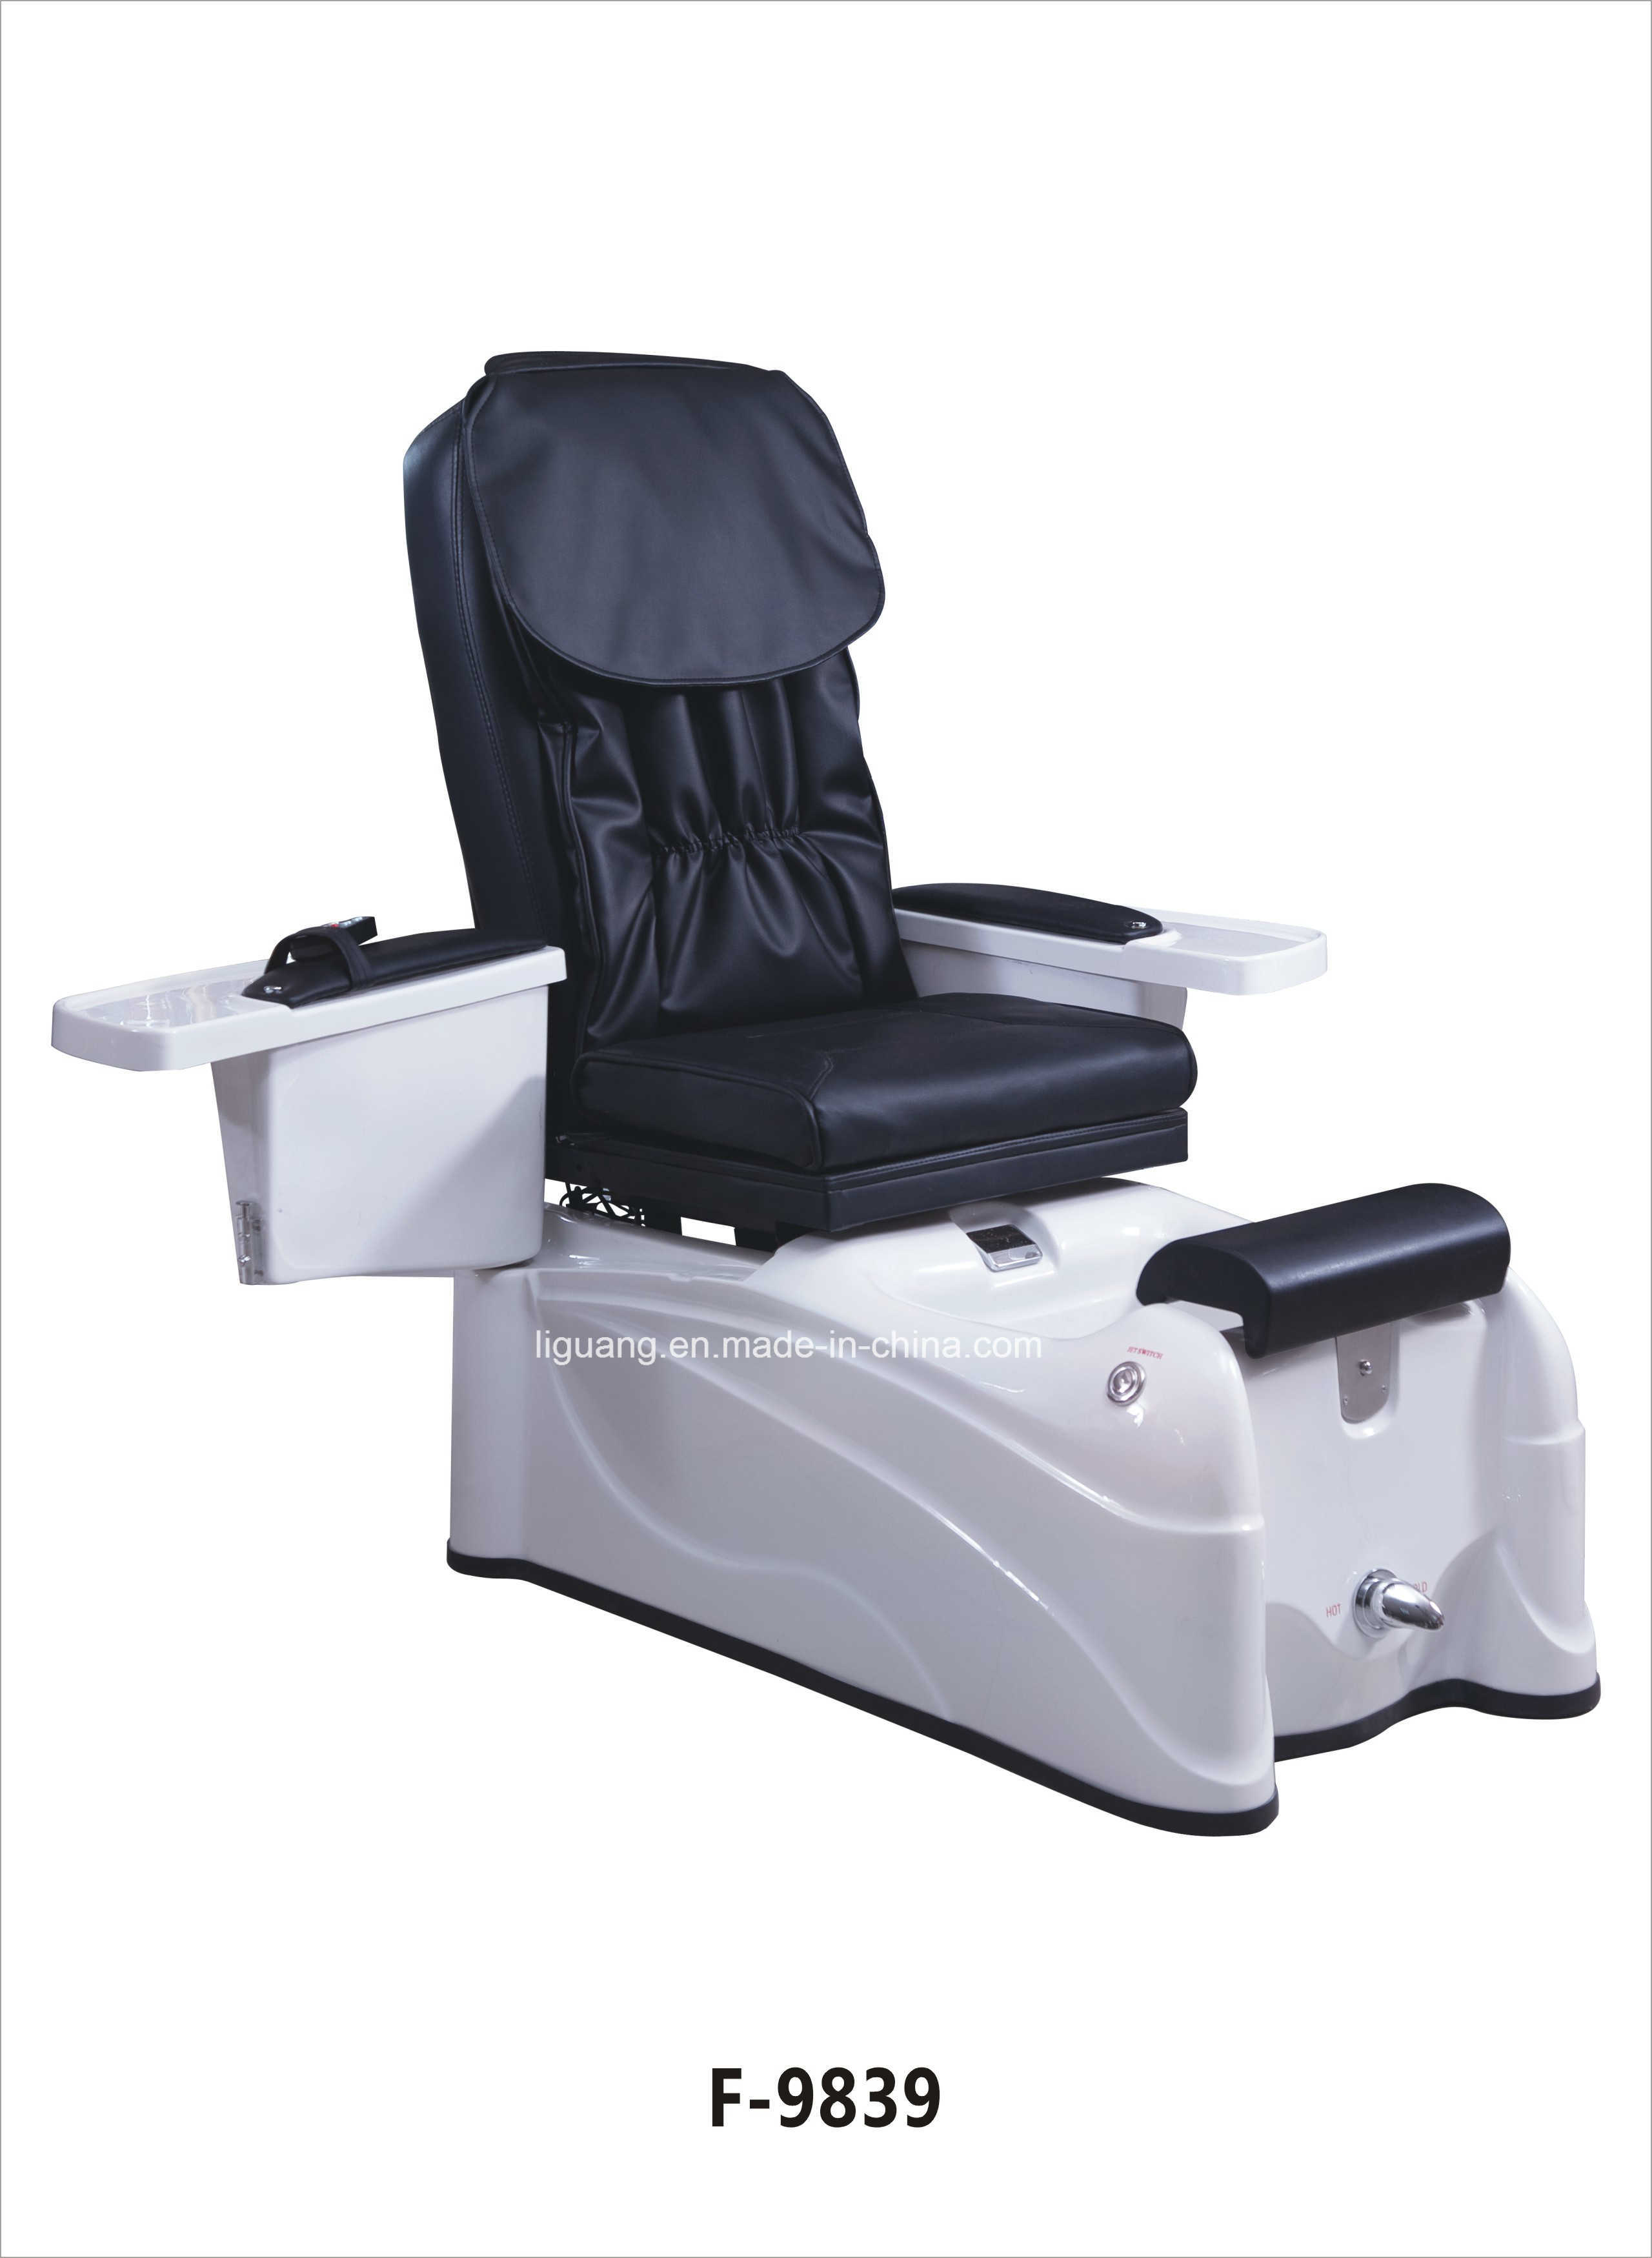 Unique Salon Furniture Jacuzzi Pump for Pedicure Chair Sap Massage Chair